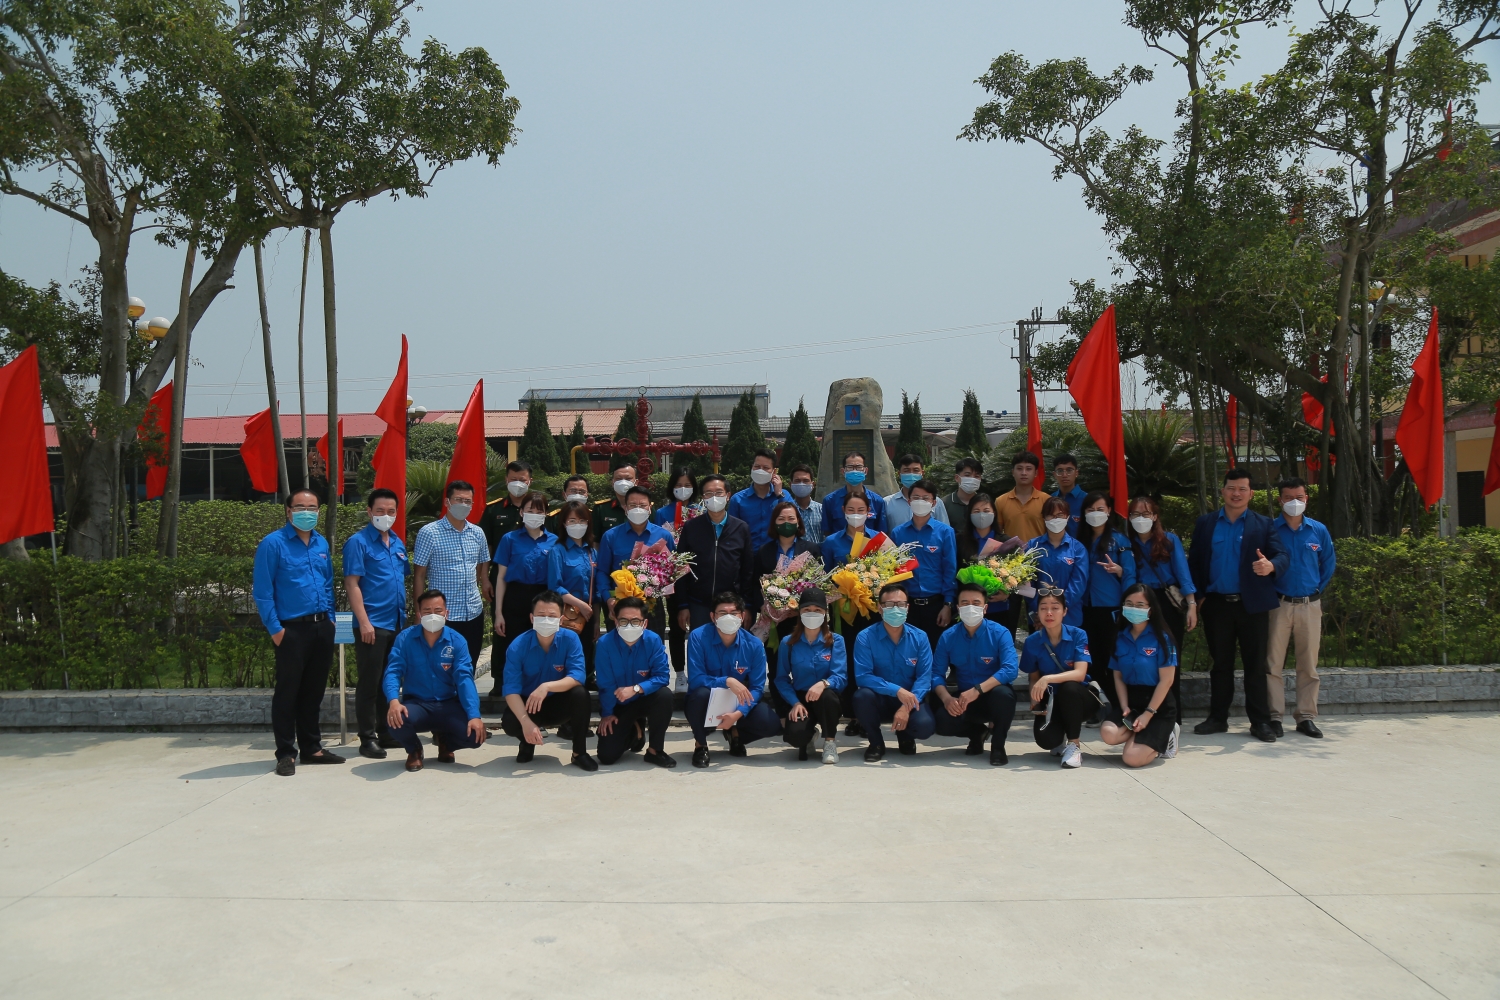 Đoàn Thanh niên Cơ quan Tập đoàn tổ chức chuỗi sự kiện ý nghĩa nhân kỷ niệm 91 năm Ngày thành lập Đoàn TNCS Hồ Chí Minh